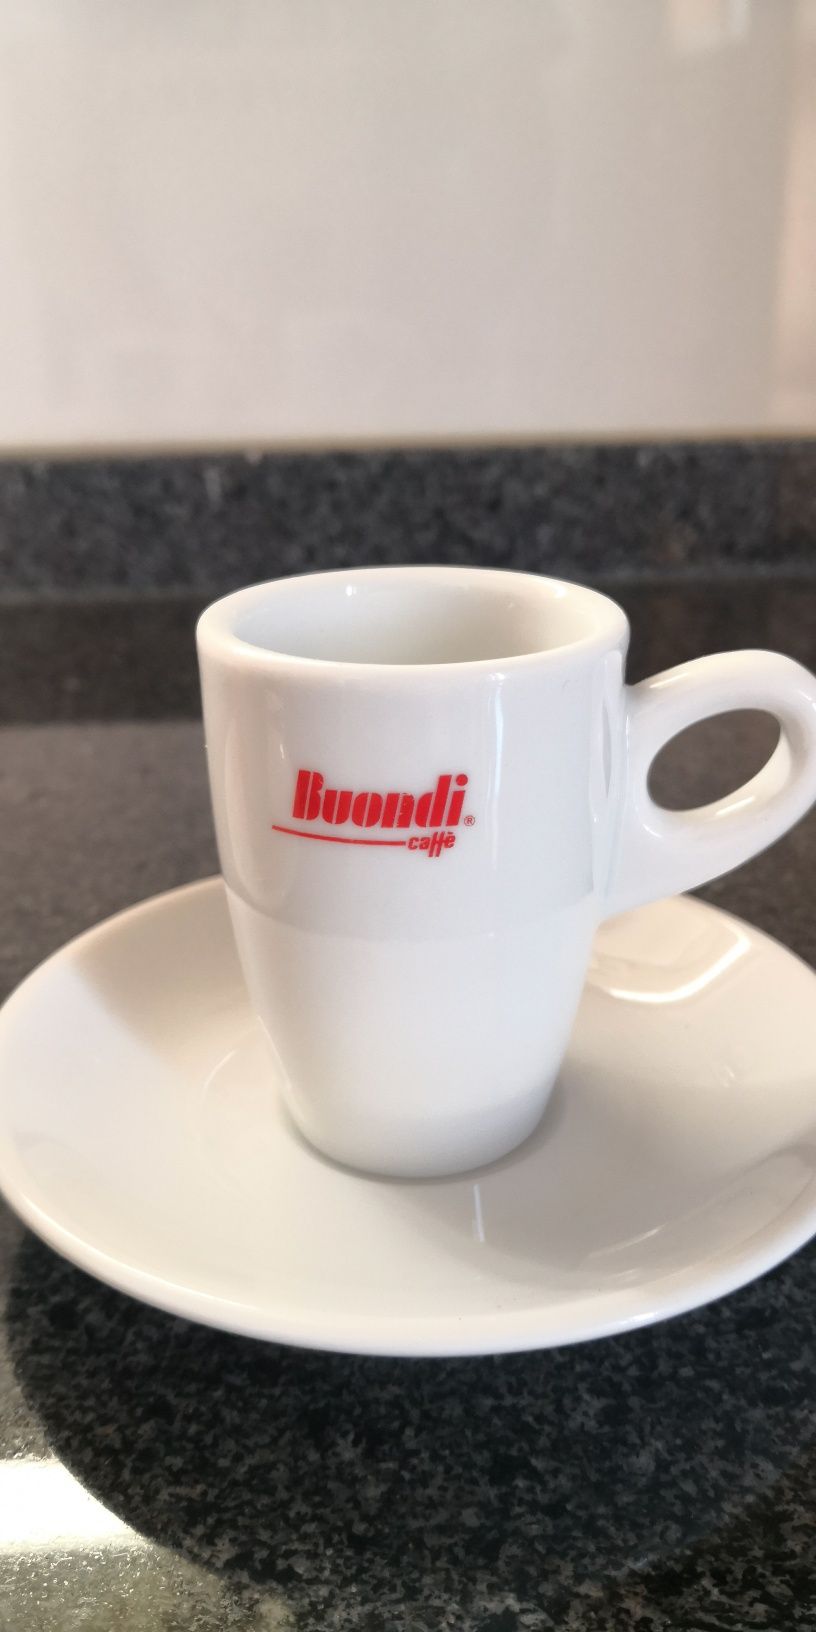 Chávenas de café Torrié e Buondi